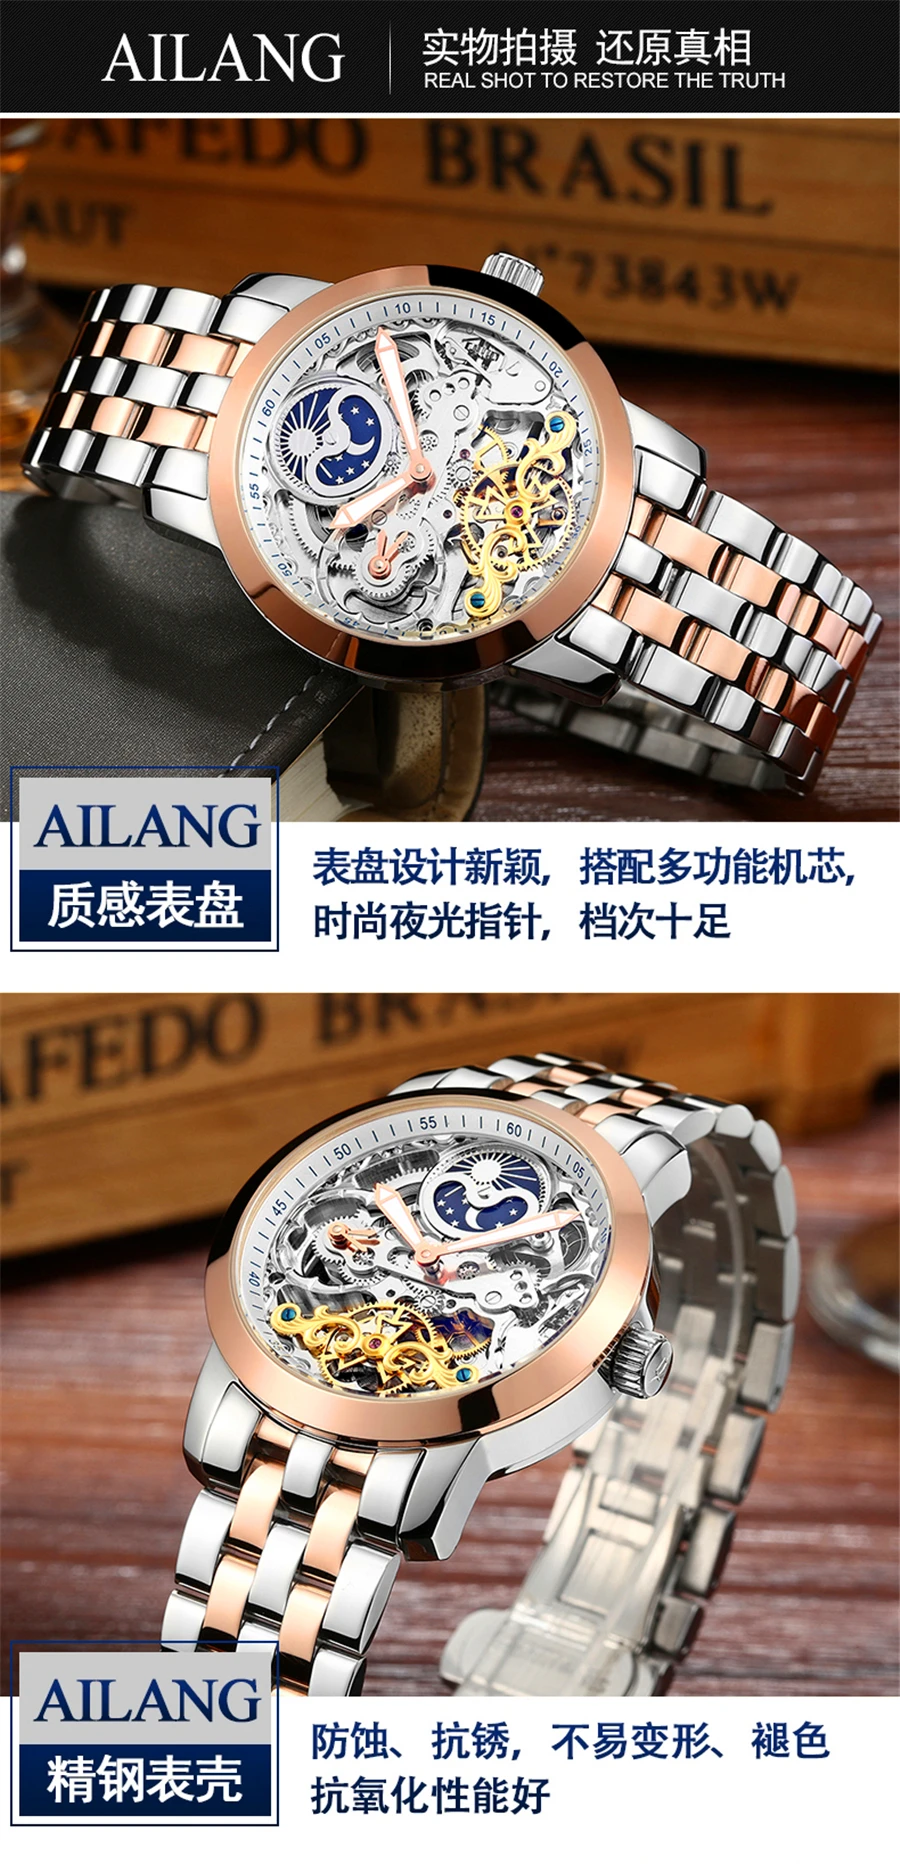 AILANG новые роскошные повседневные часы для мужчин автоматические часы Скелет Бизнес часы Механические Relogio мужские Montre часы для мужчин s Reloje